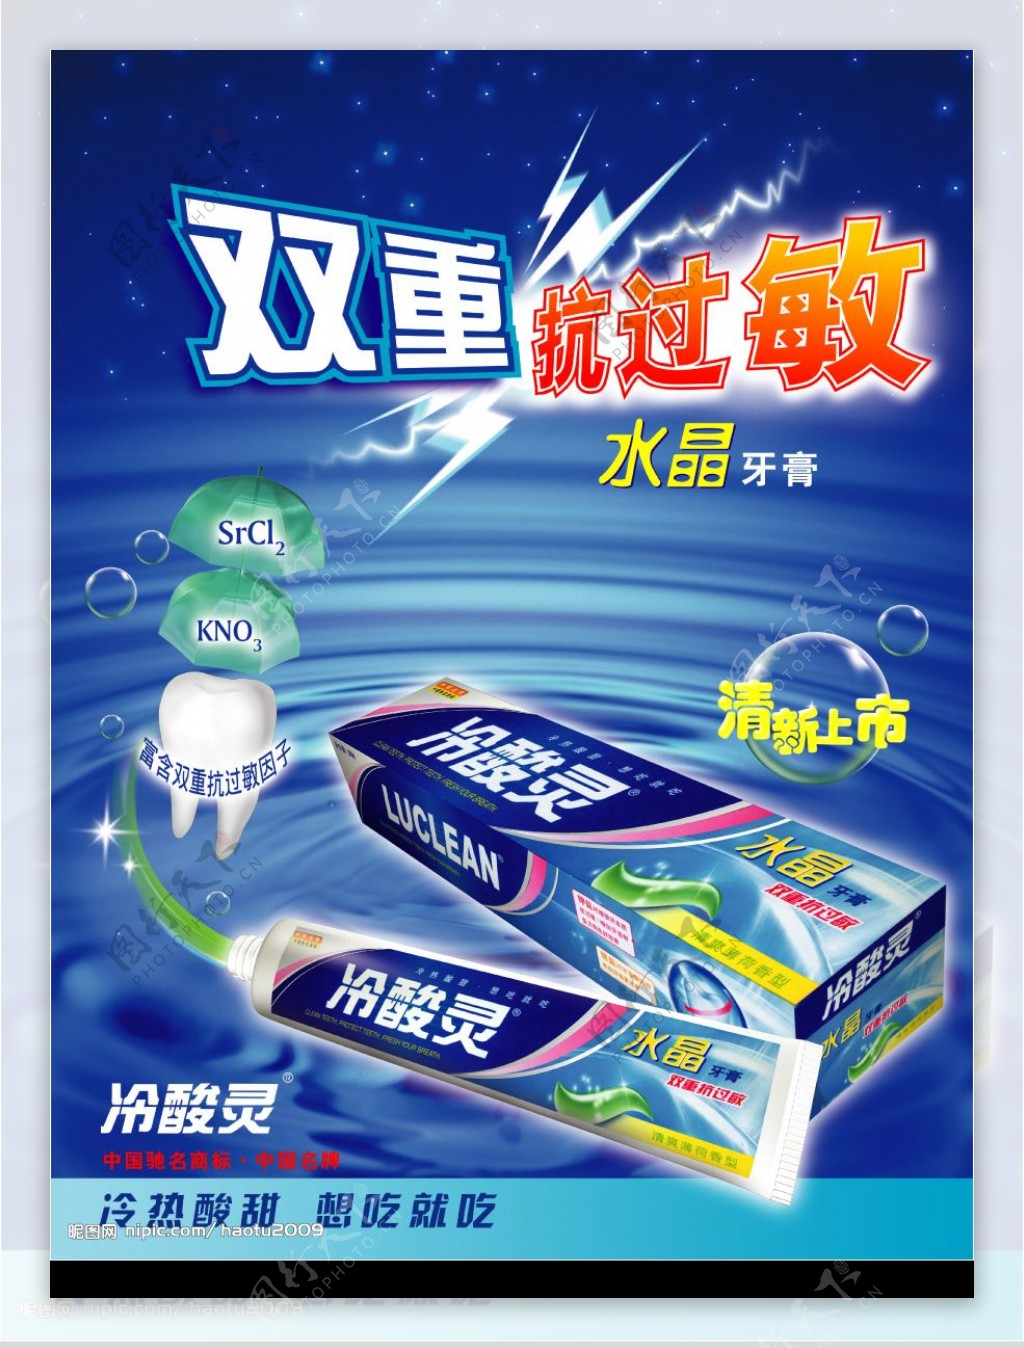 冷酸灵水晶牙膏广告素材图片